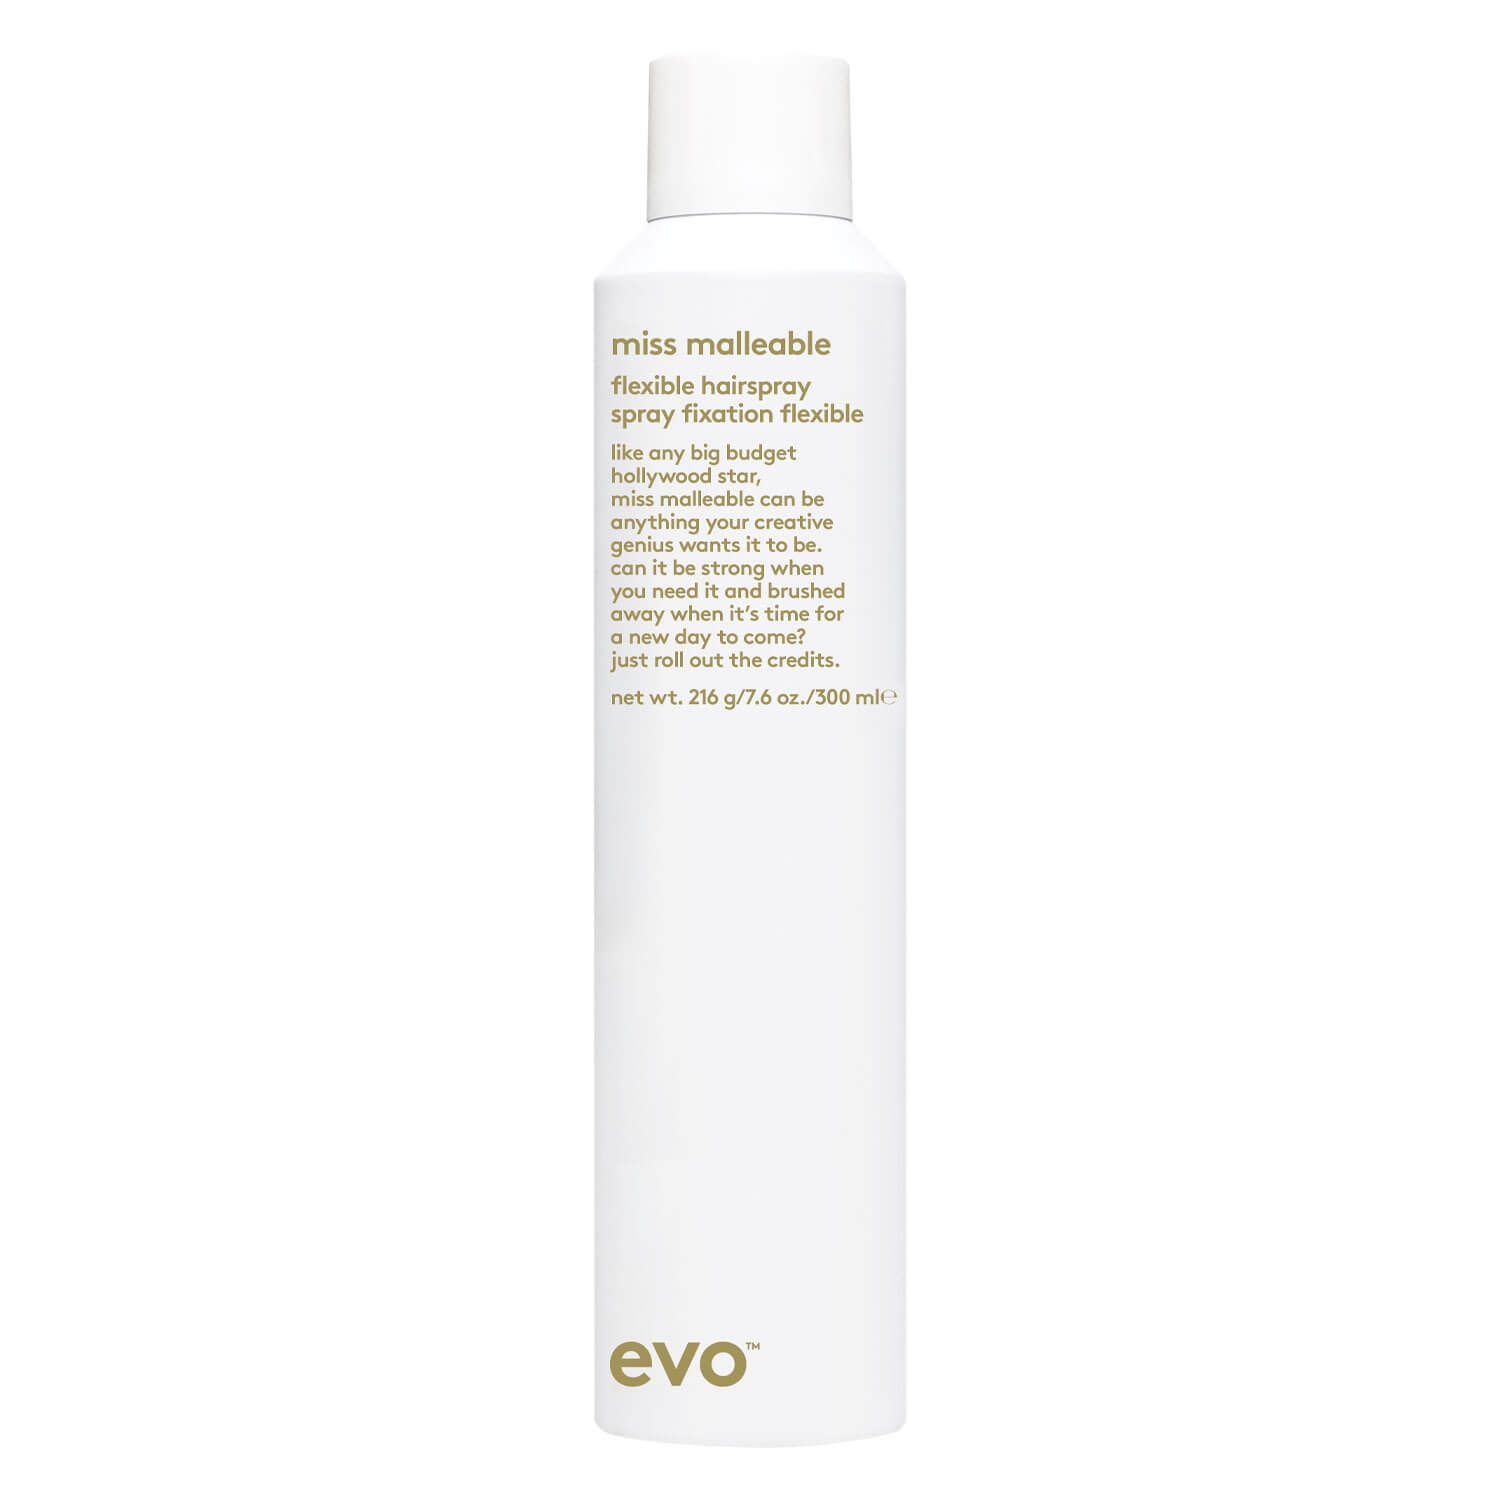 Produktbild von evo style - miss malleable flexible hairspray